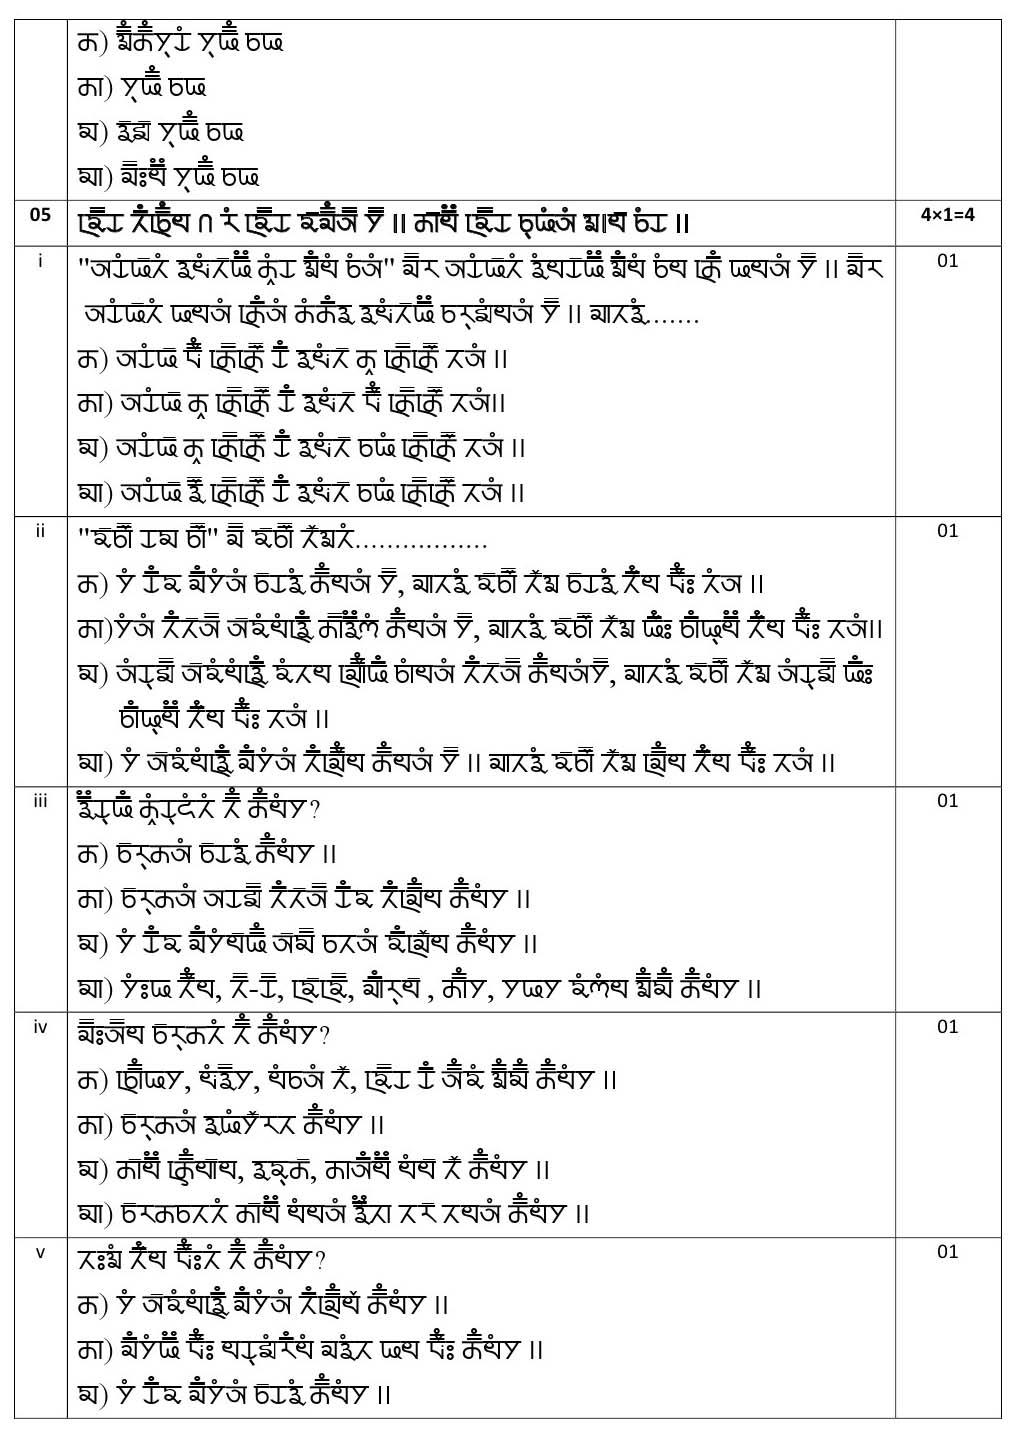 Gurung CBSE Class X Sample Question Paper 2020 21 - Image 8